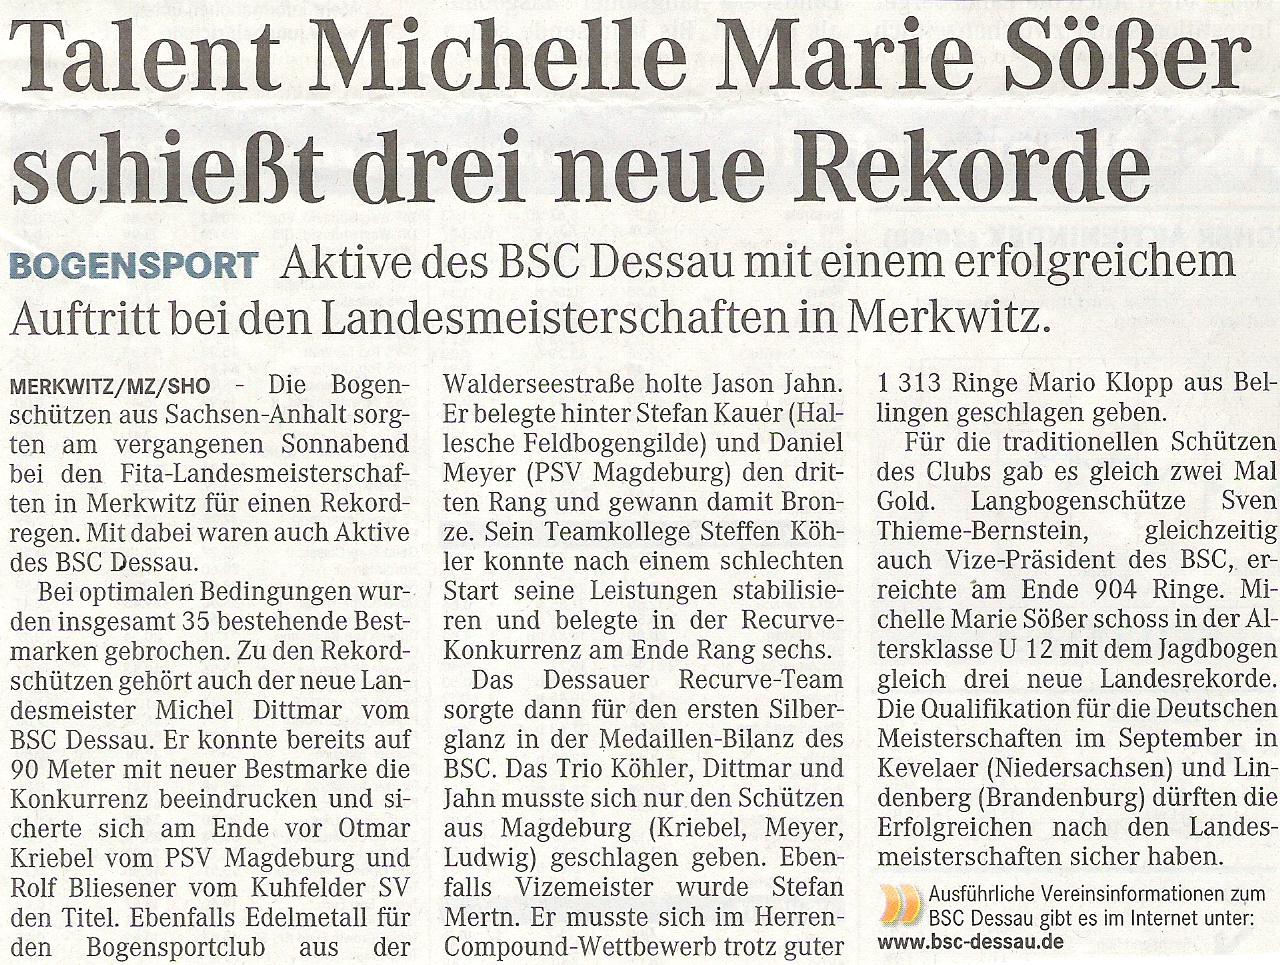 LM FITA Scheibe in Merkwitz – Mitteldeutsche Zeitung vom 02.07.2009